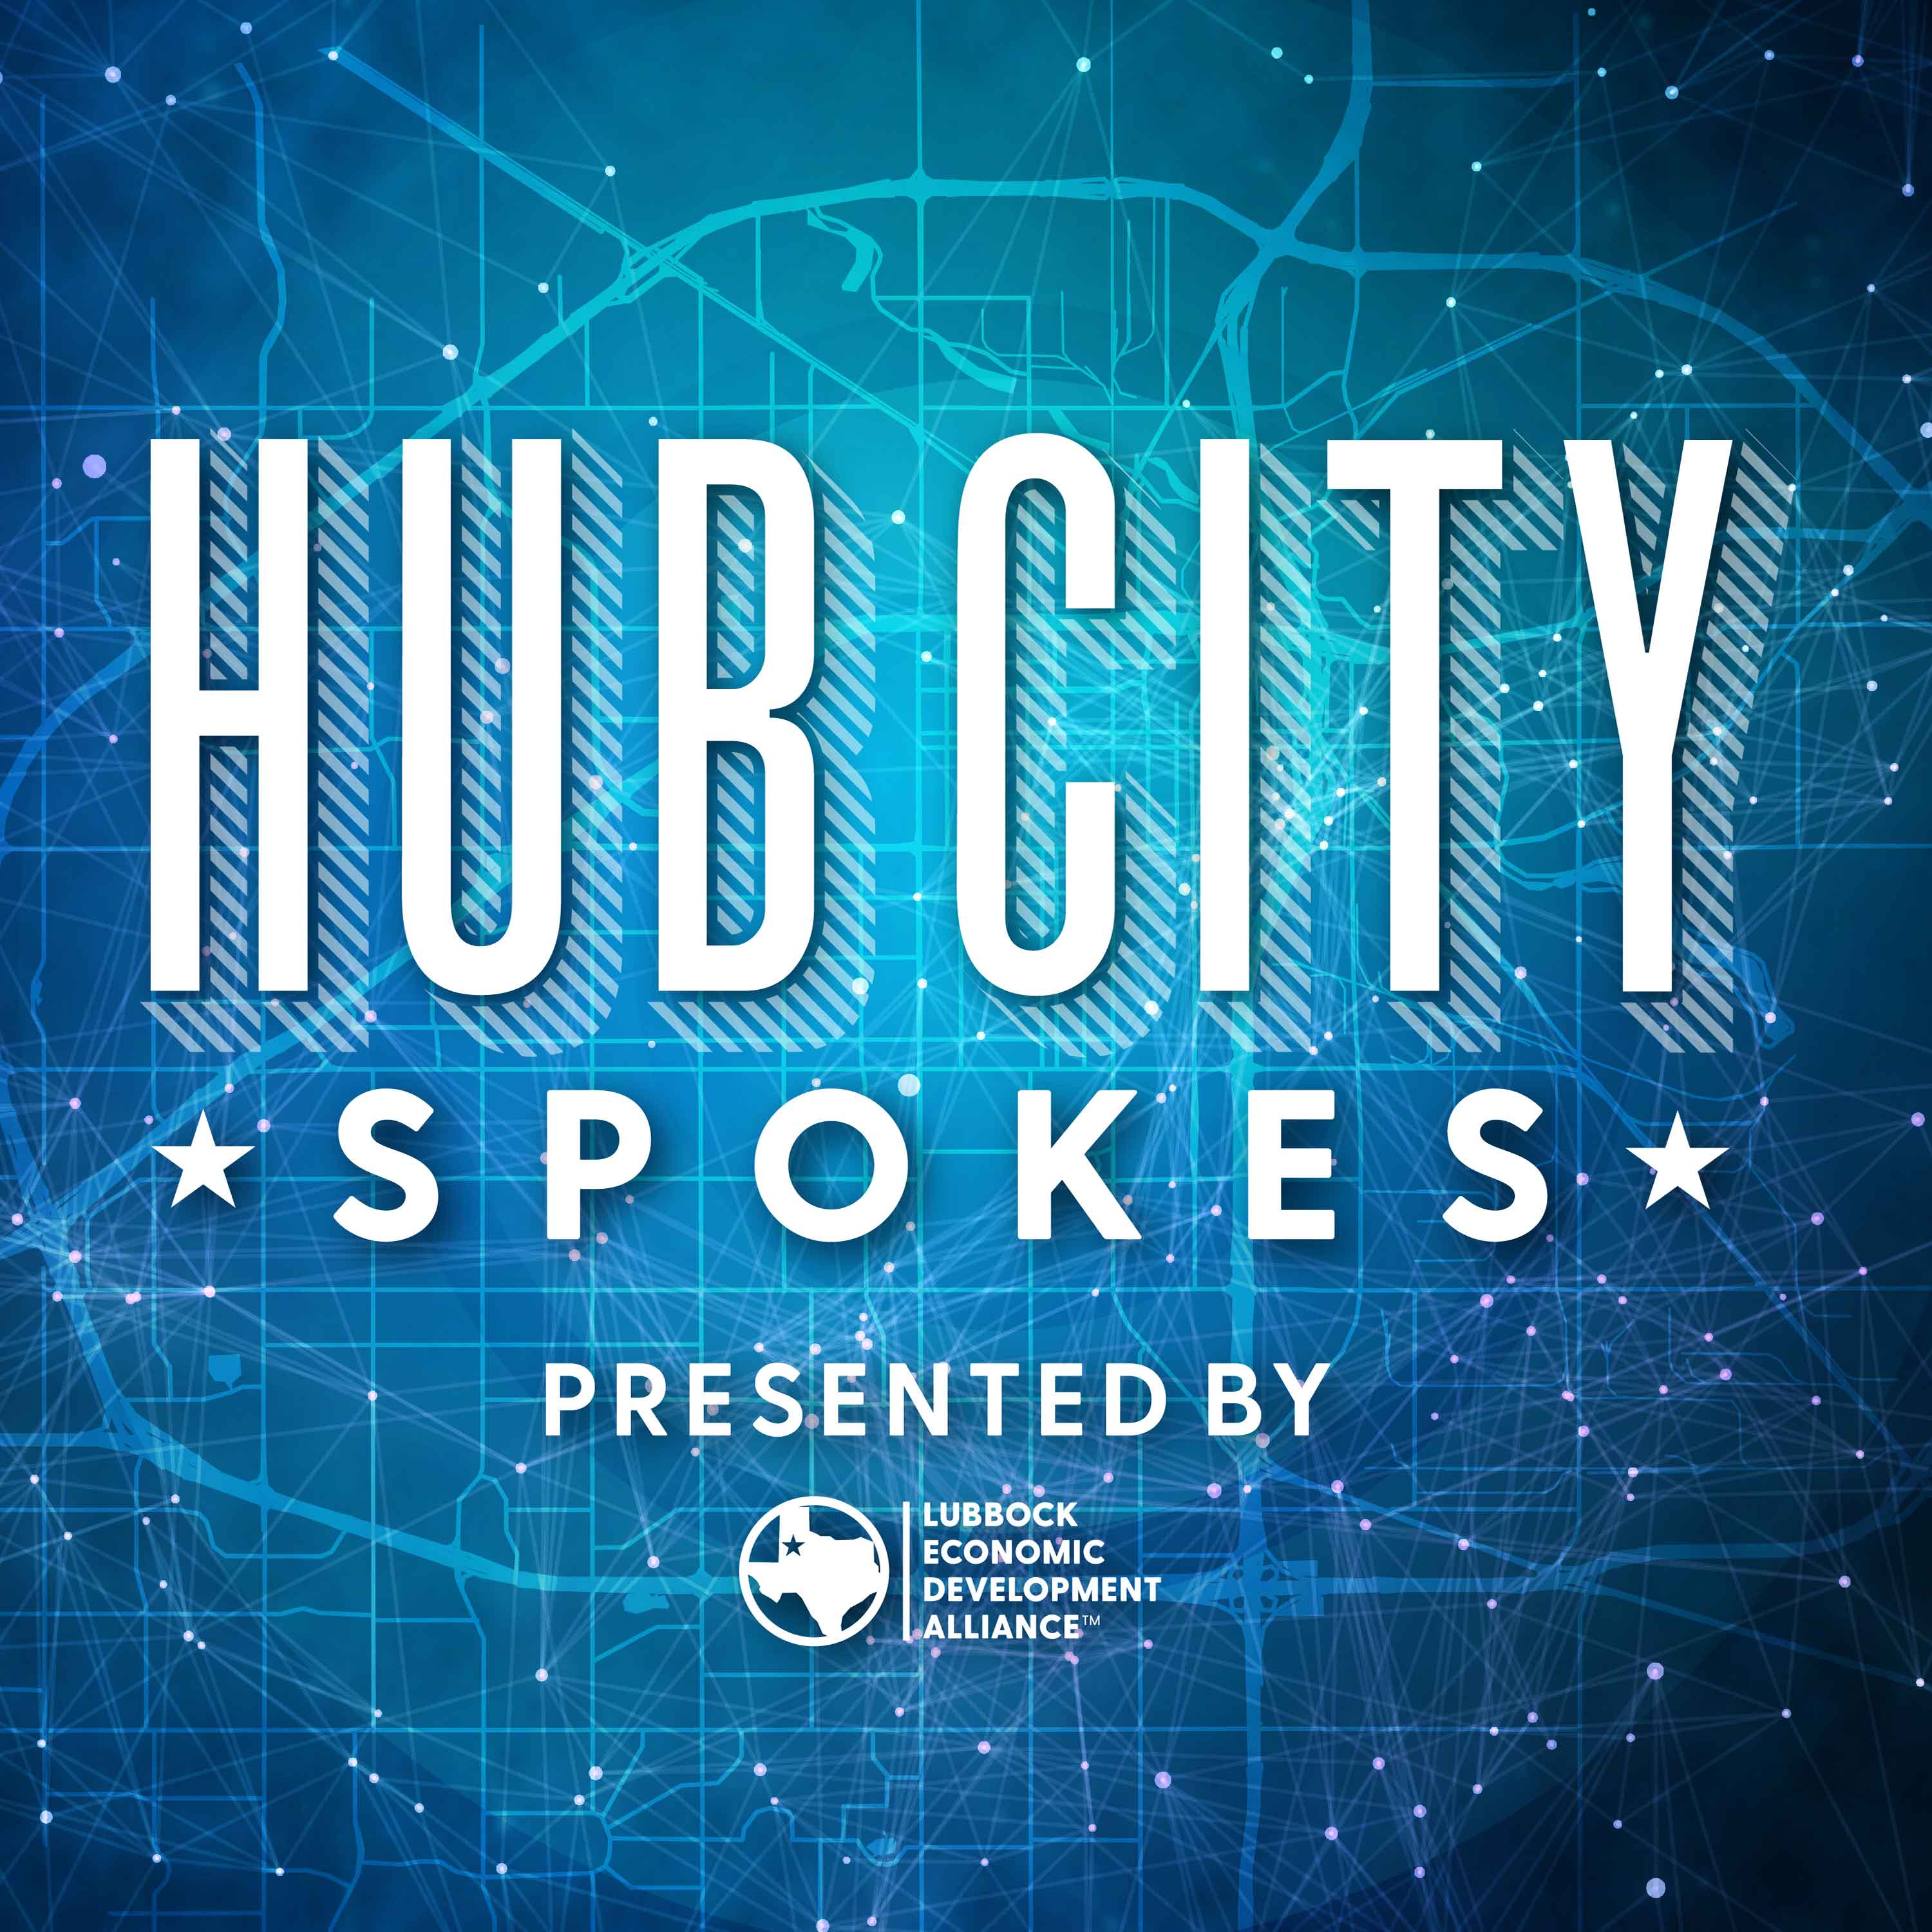 Hub City Spokes